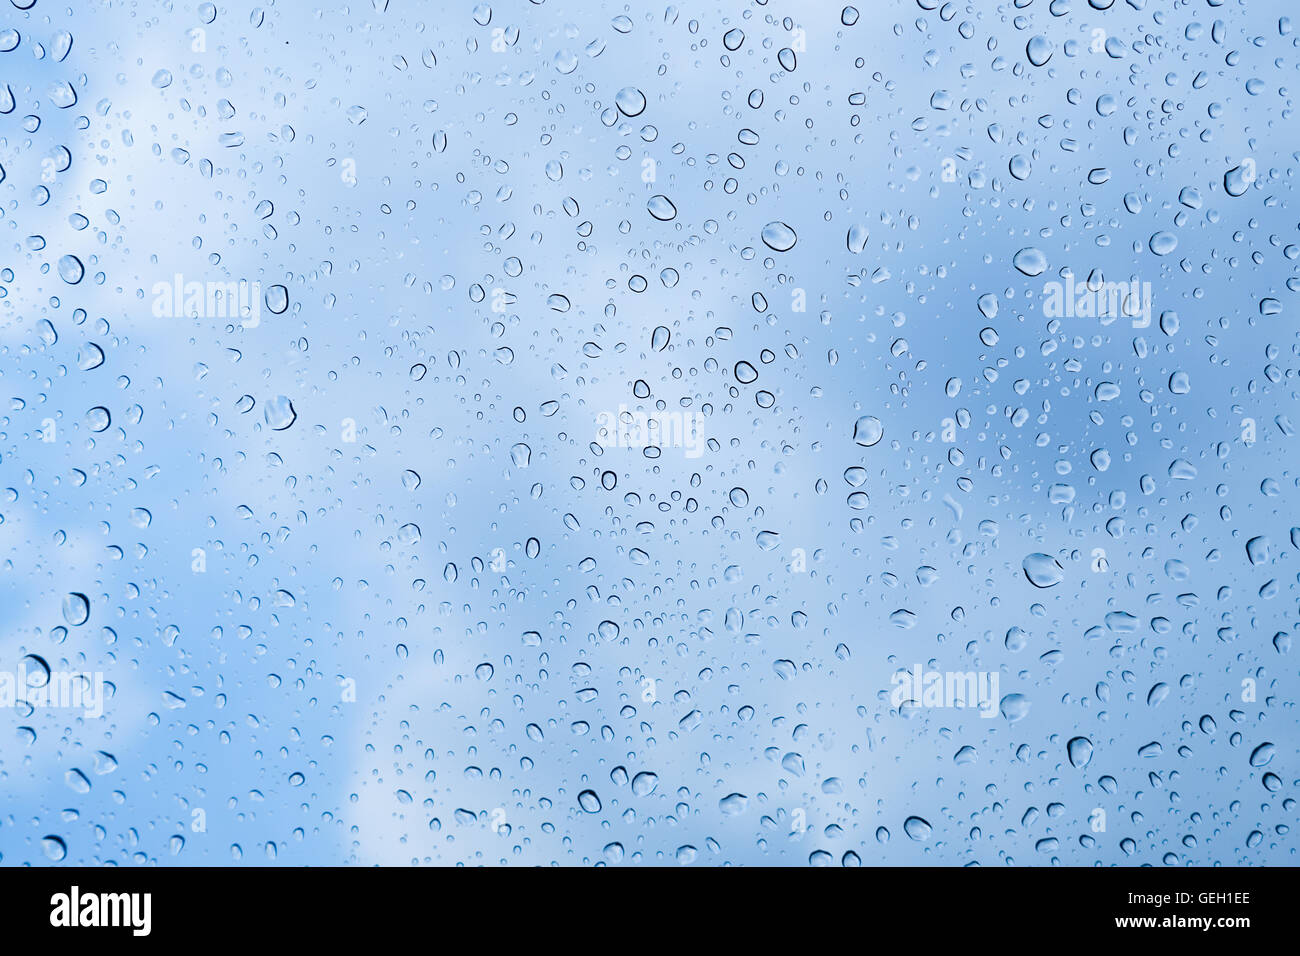 La pioggia caduta sul vetro con lo sfondo del cielo Foto Stock